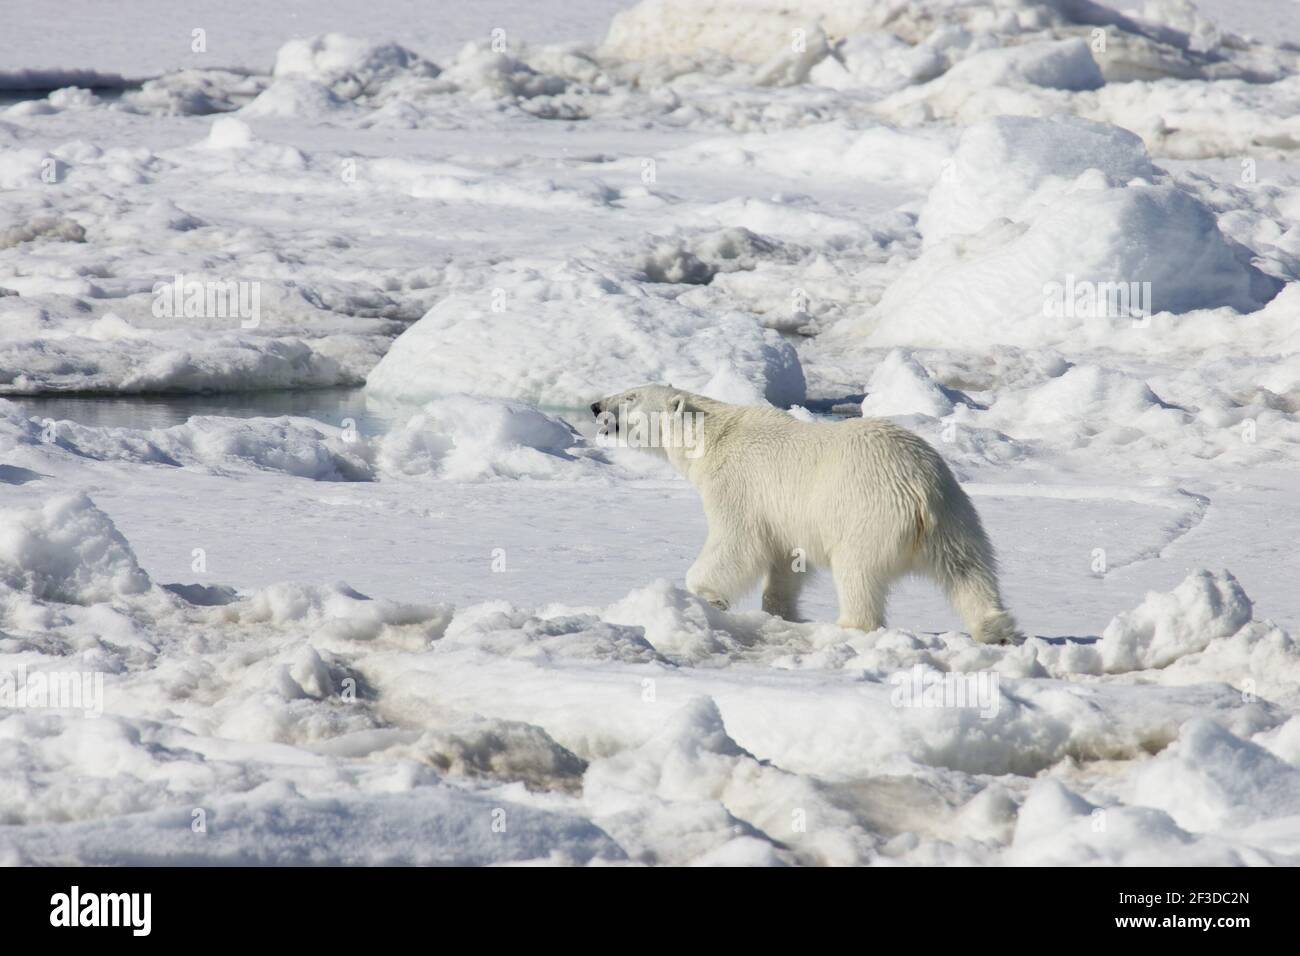 Ours polaire - sur la mer IceUrsus maritimus Svalbard (Spitsbergen) Norvège MA001879 Banque D'Images